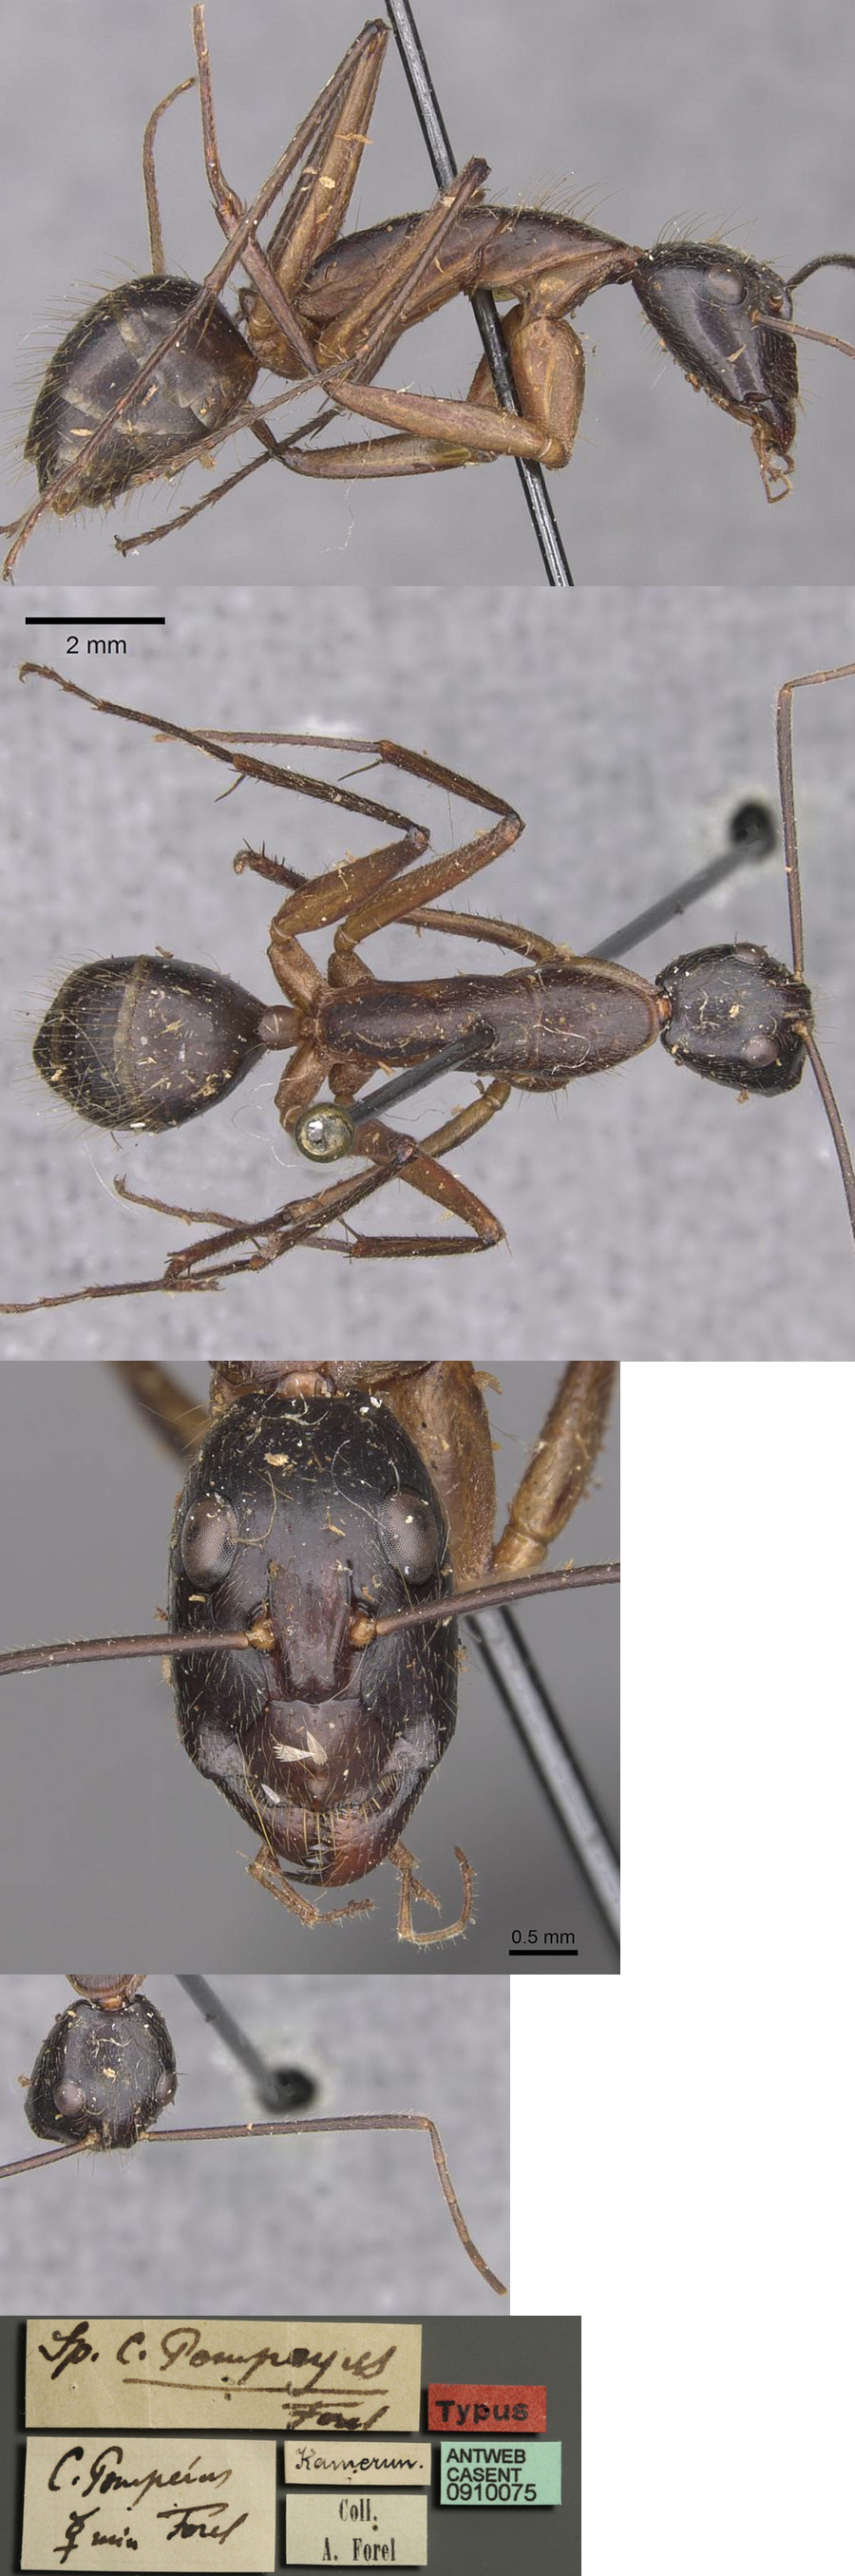 Camponotus pompeius minor